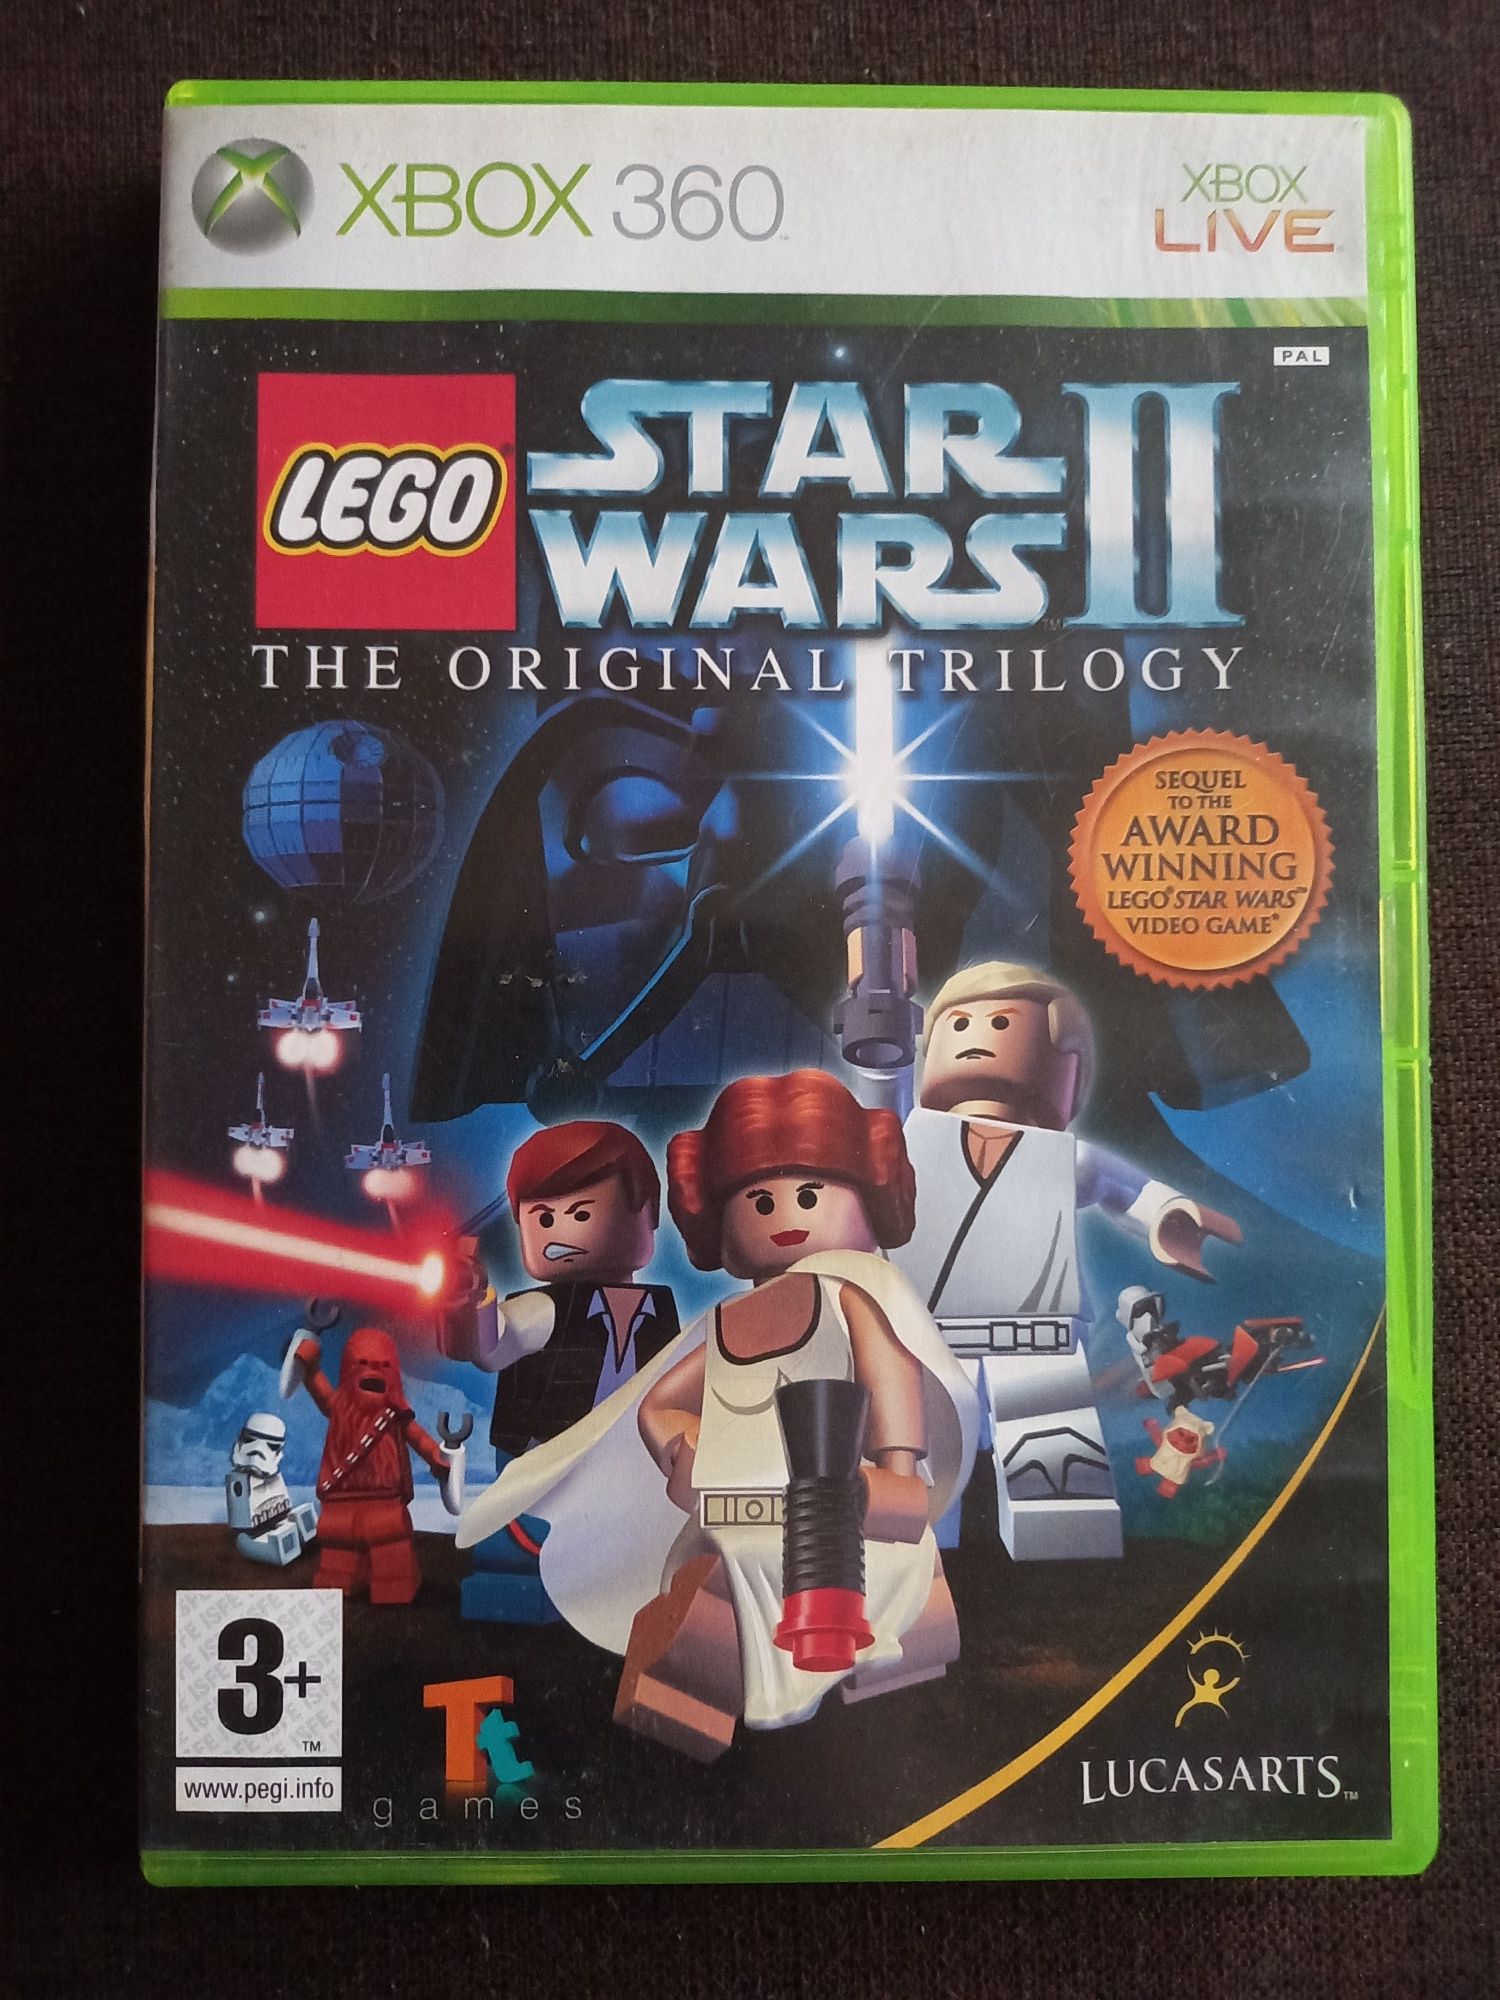 Gra Lego Star Wars 2 The Original Trilogy na xbox 360 Gwiezdne Wojny